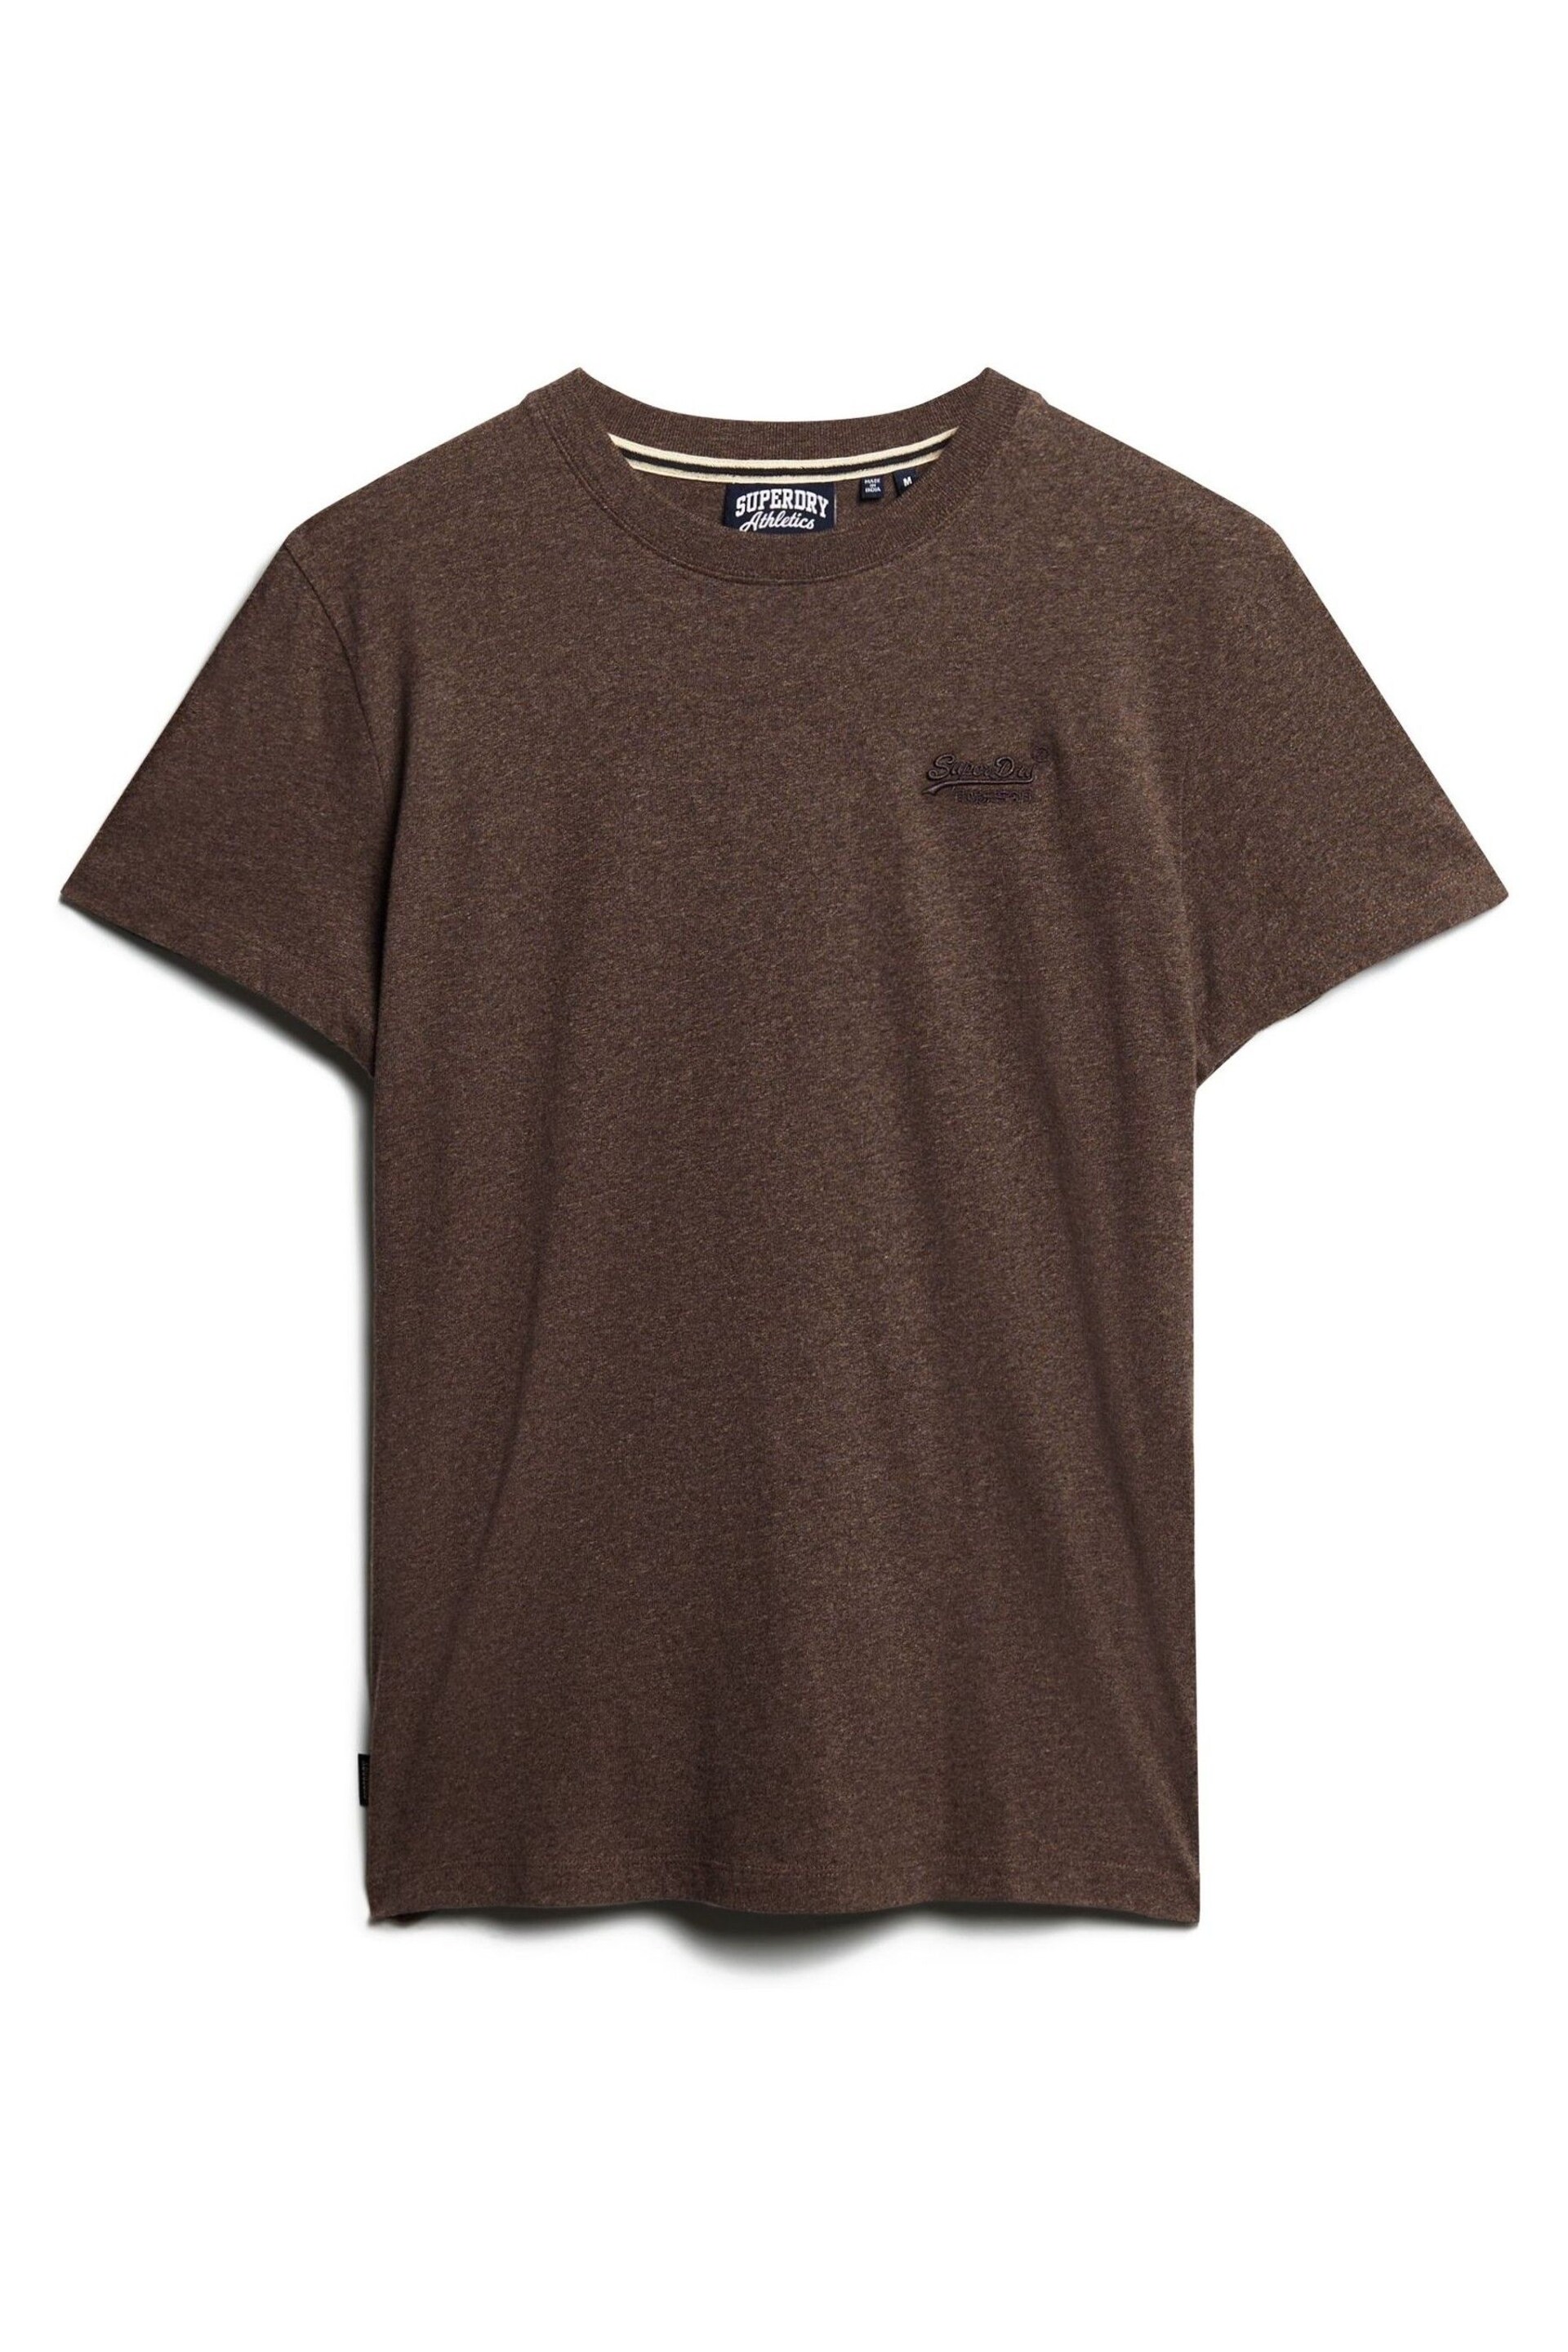 Superdry Brown Vintage Logo Emb T-Shirt - Image 4 of 6